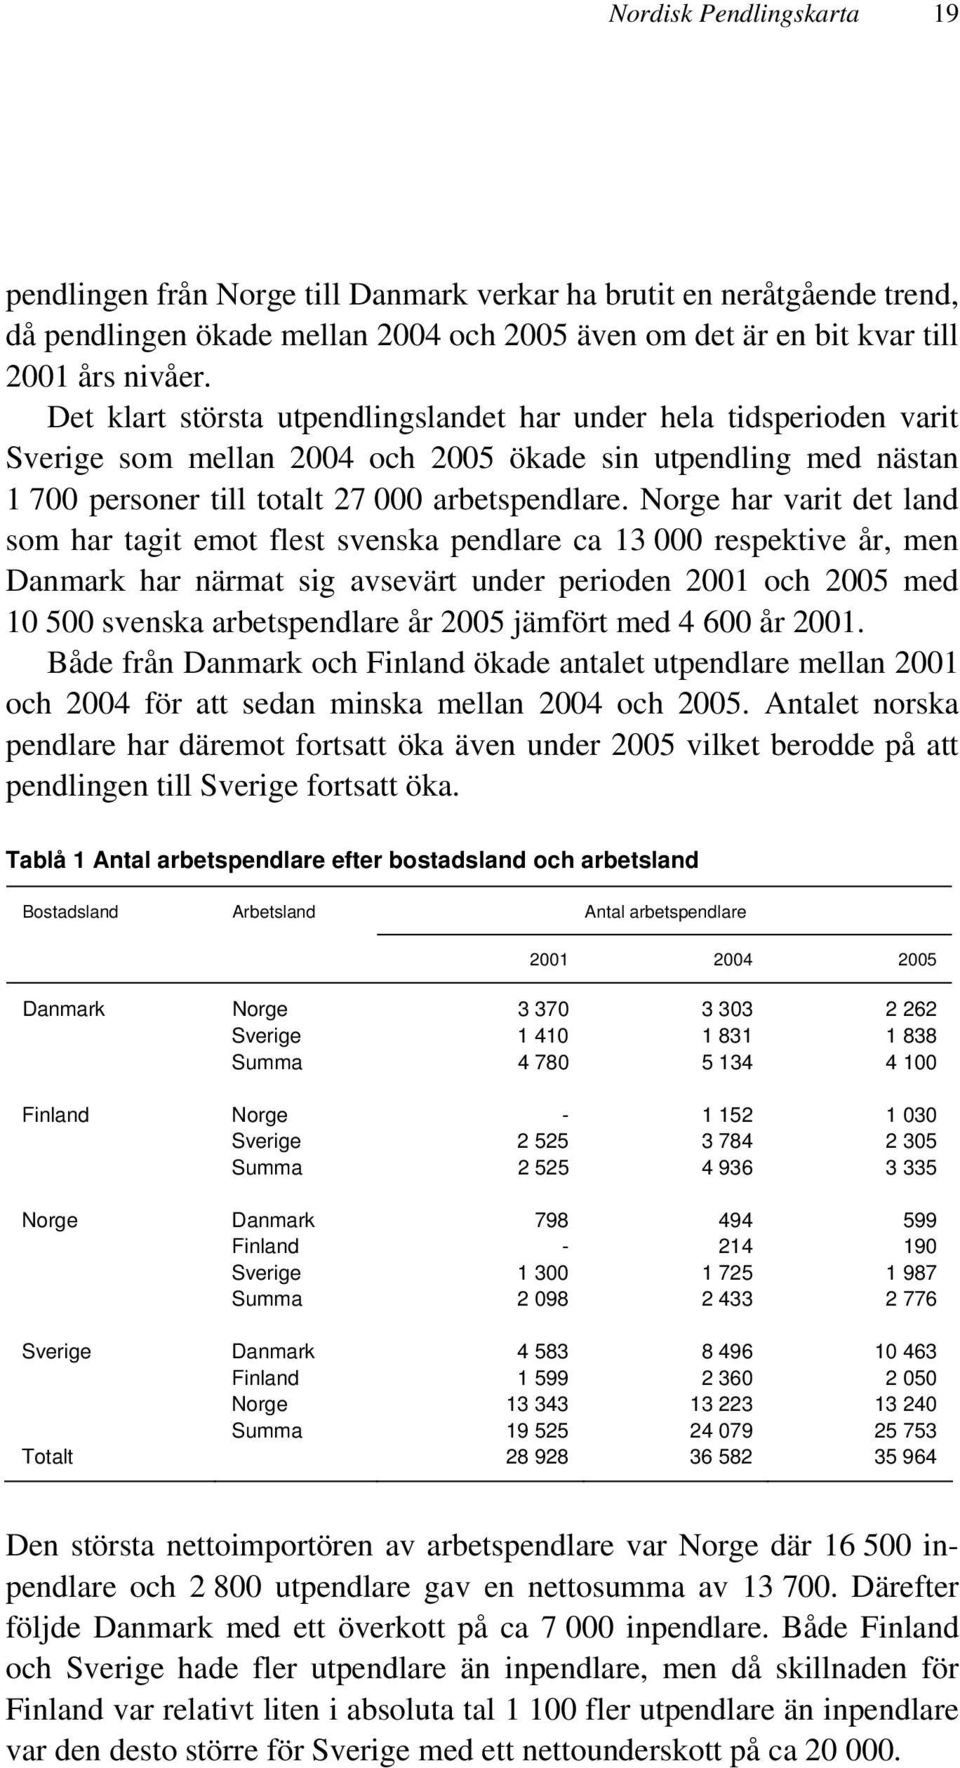 Norge har varit det land som har tagit emot flest svenska pendlare ca 13 000 respektive år, men Danmark har närmat sig avsevärt under perioden 2001 och 2005 med 10 500 svenska arbetspendlare år 2005